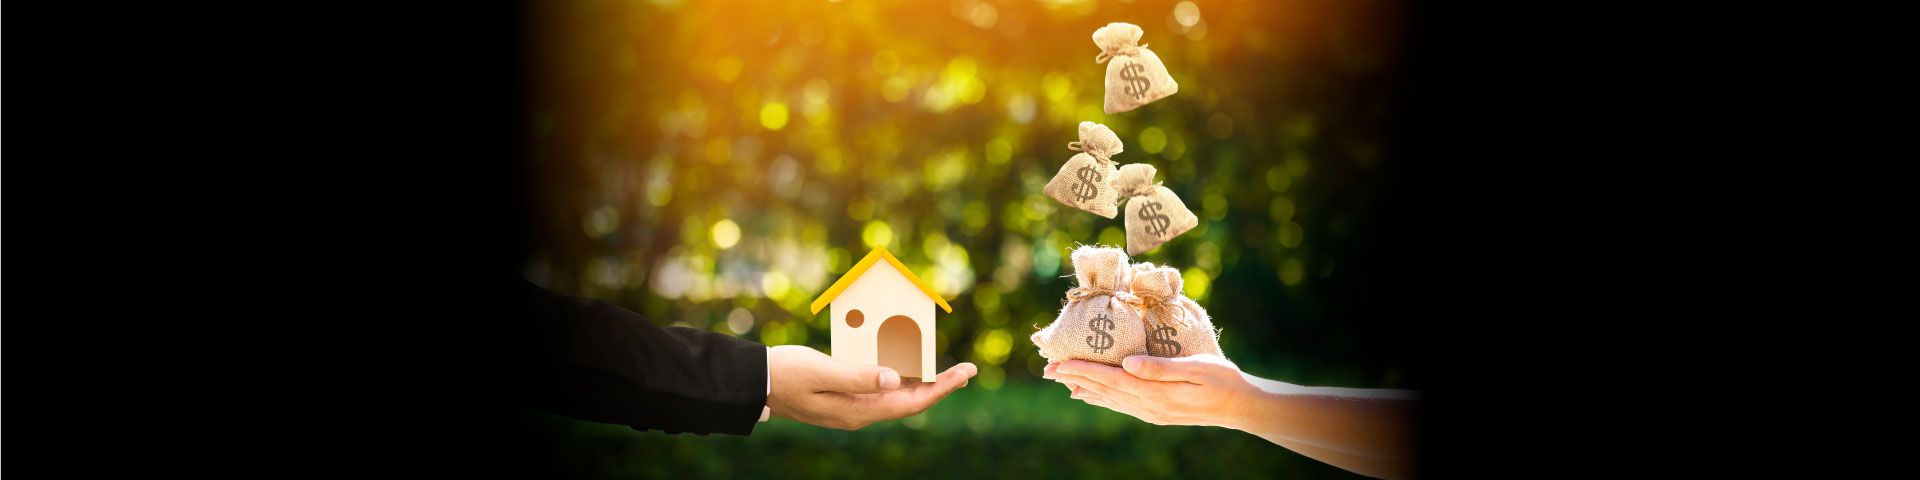 5 เหตุผลหลักๆ ที่คุณควร refinance บ้าน